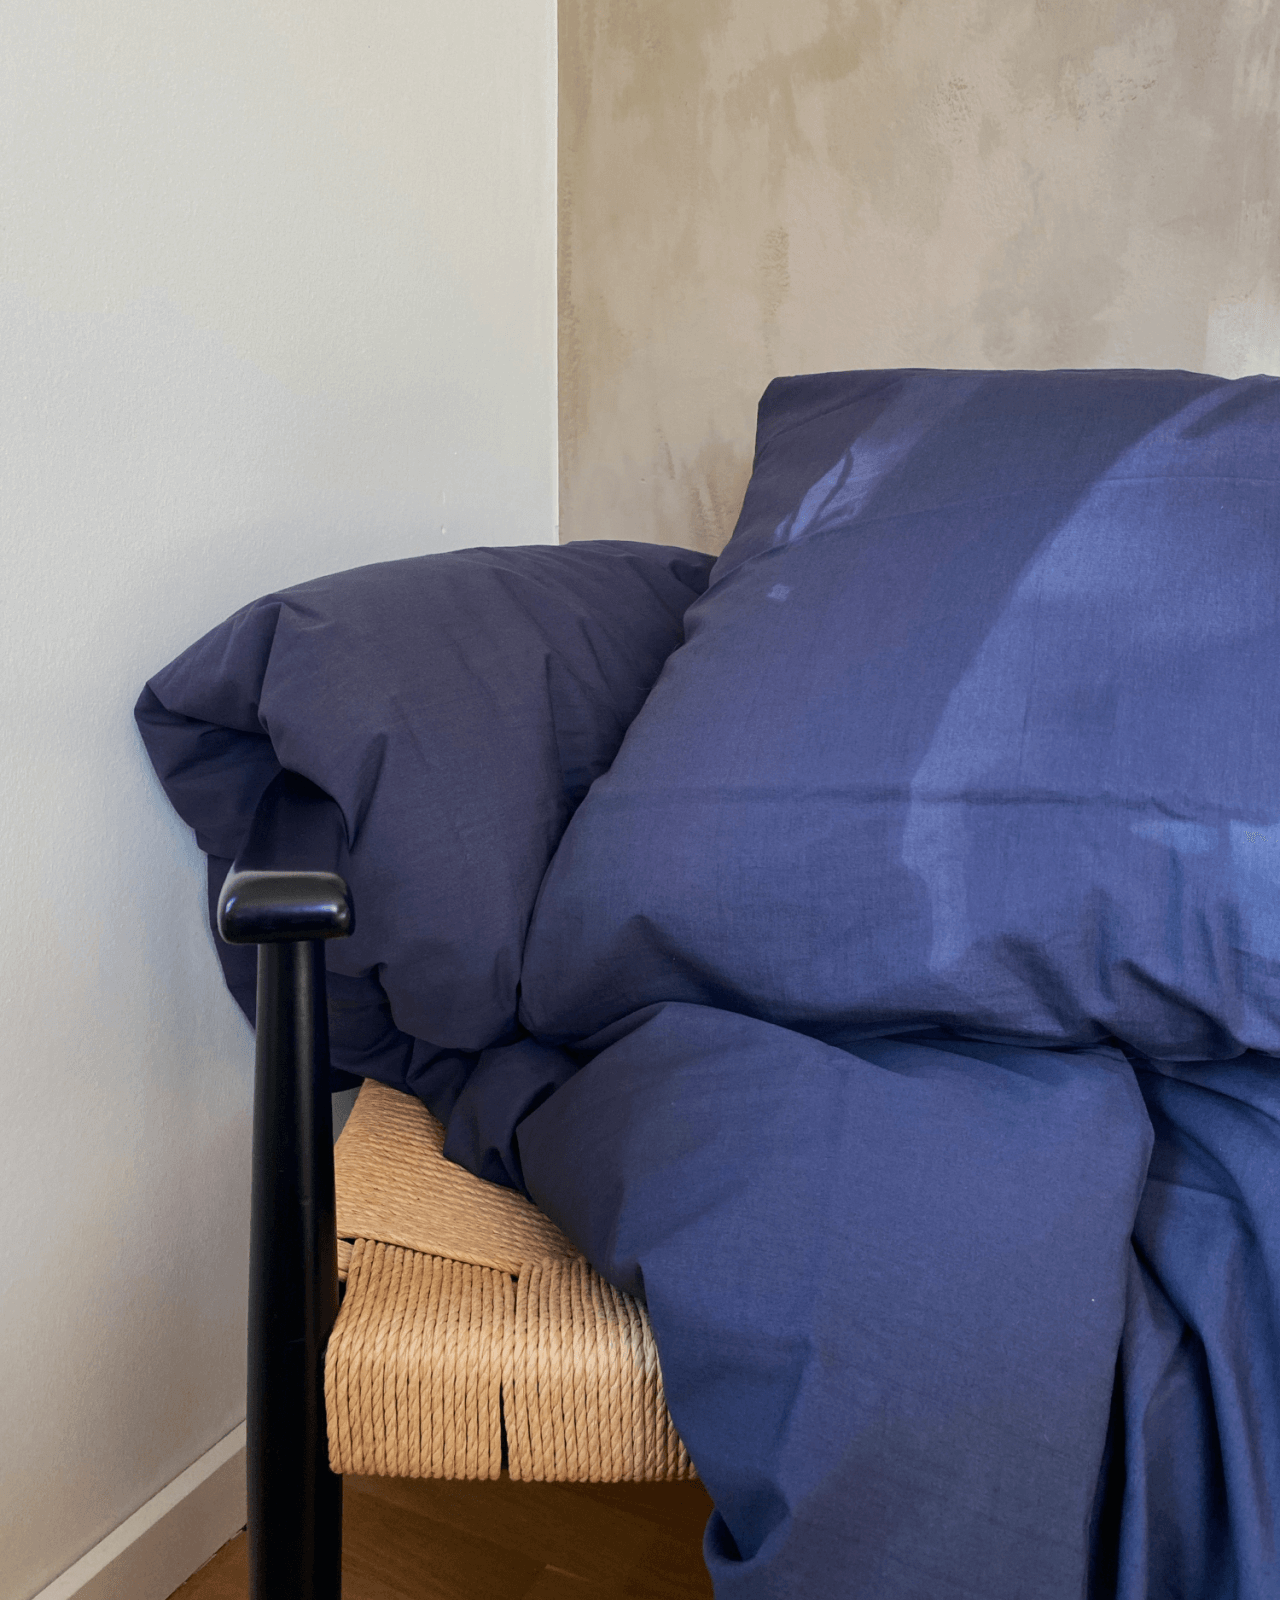 Blåt sengetøj liggende på en stol foran en beige og hvid væg